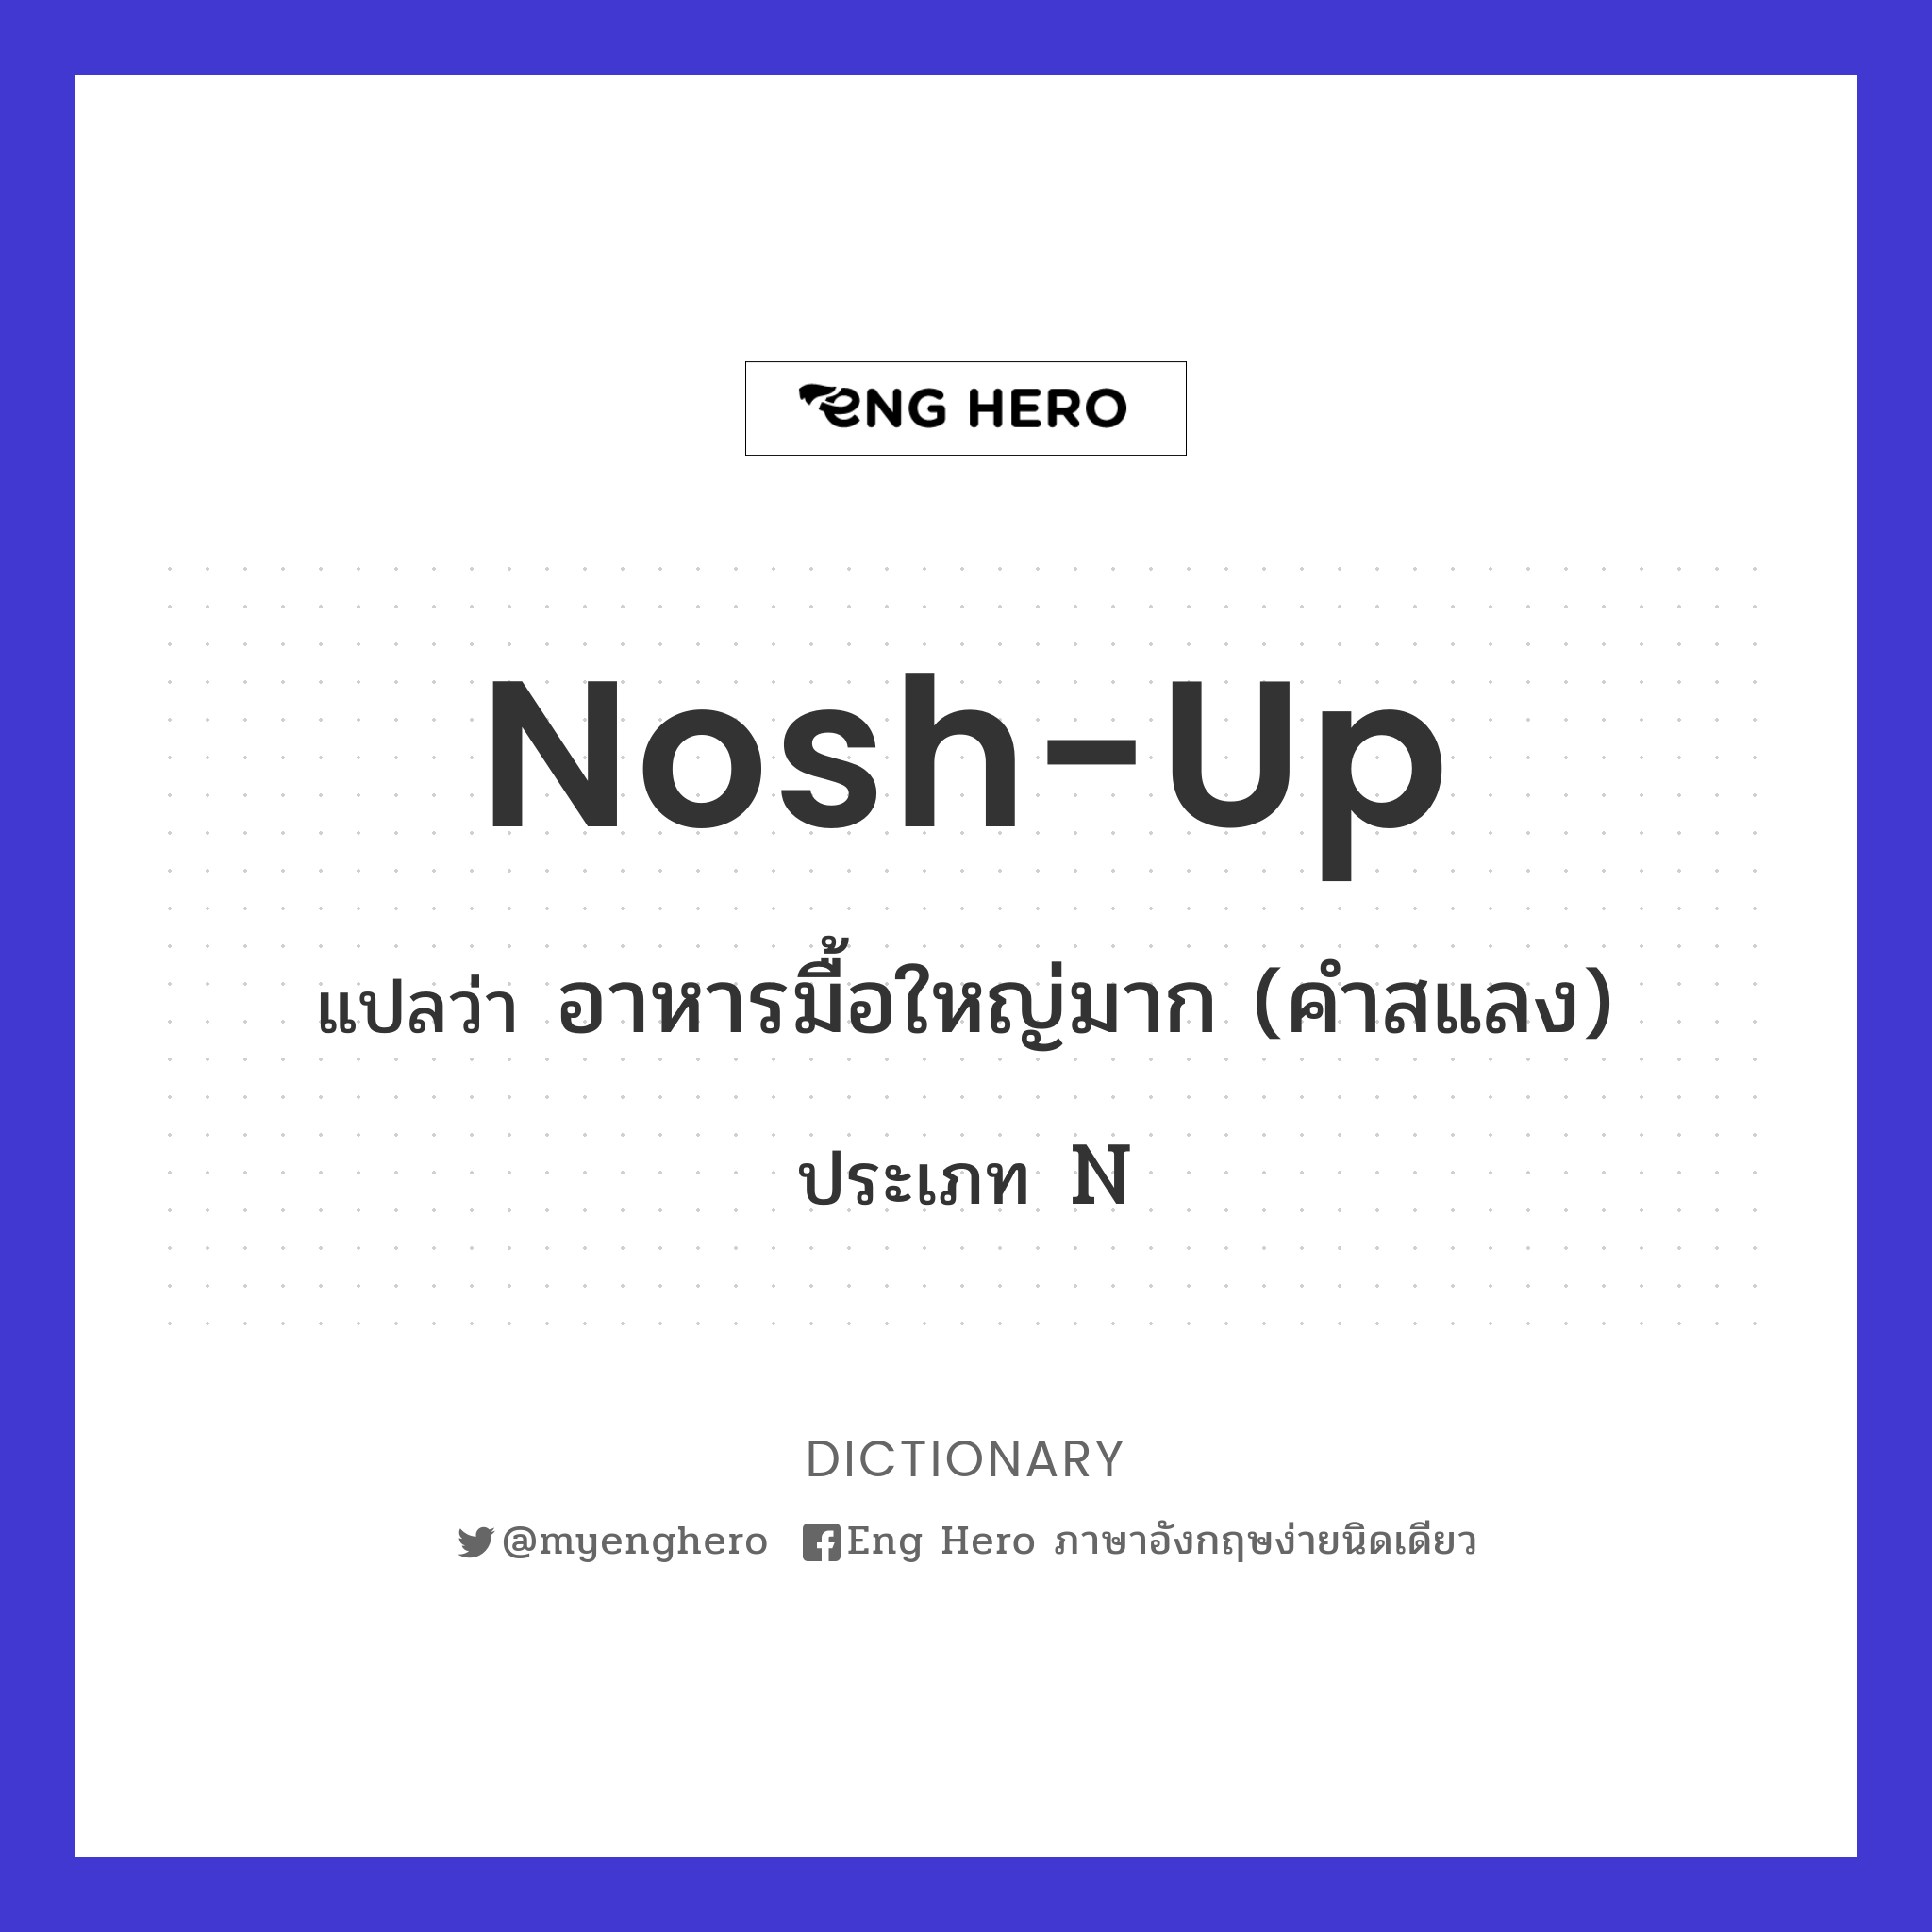 nosh-up